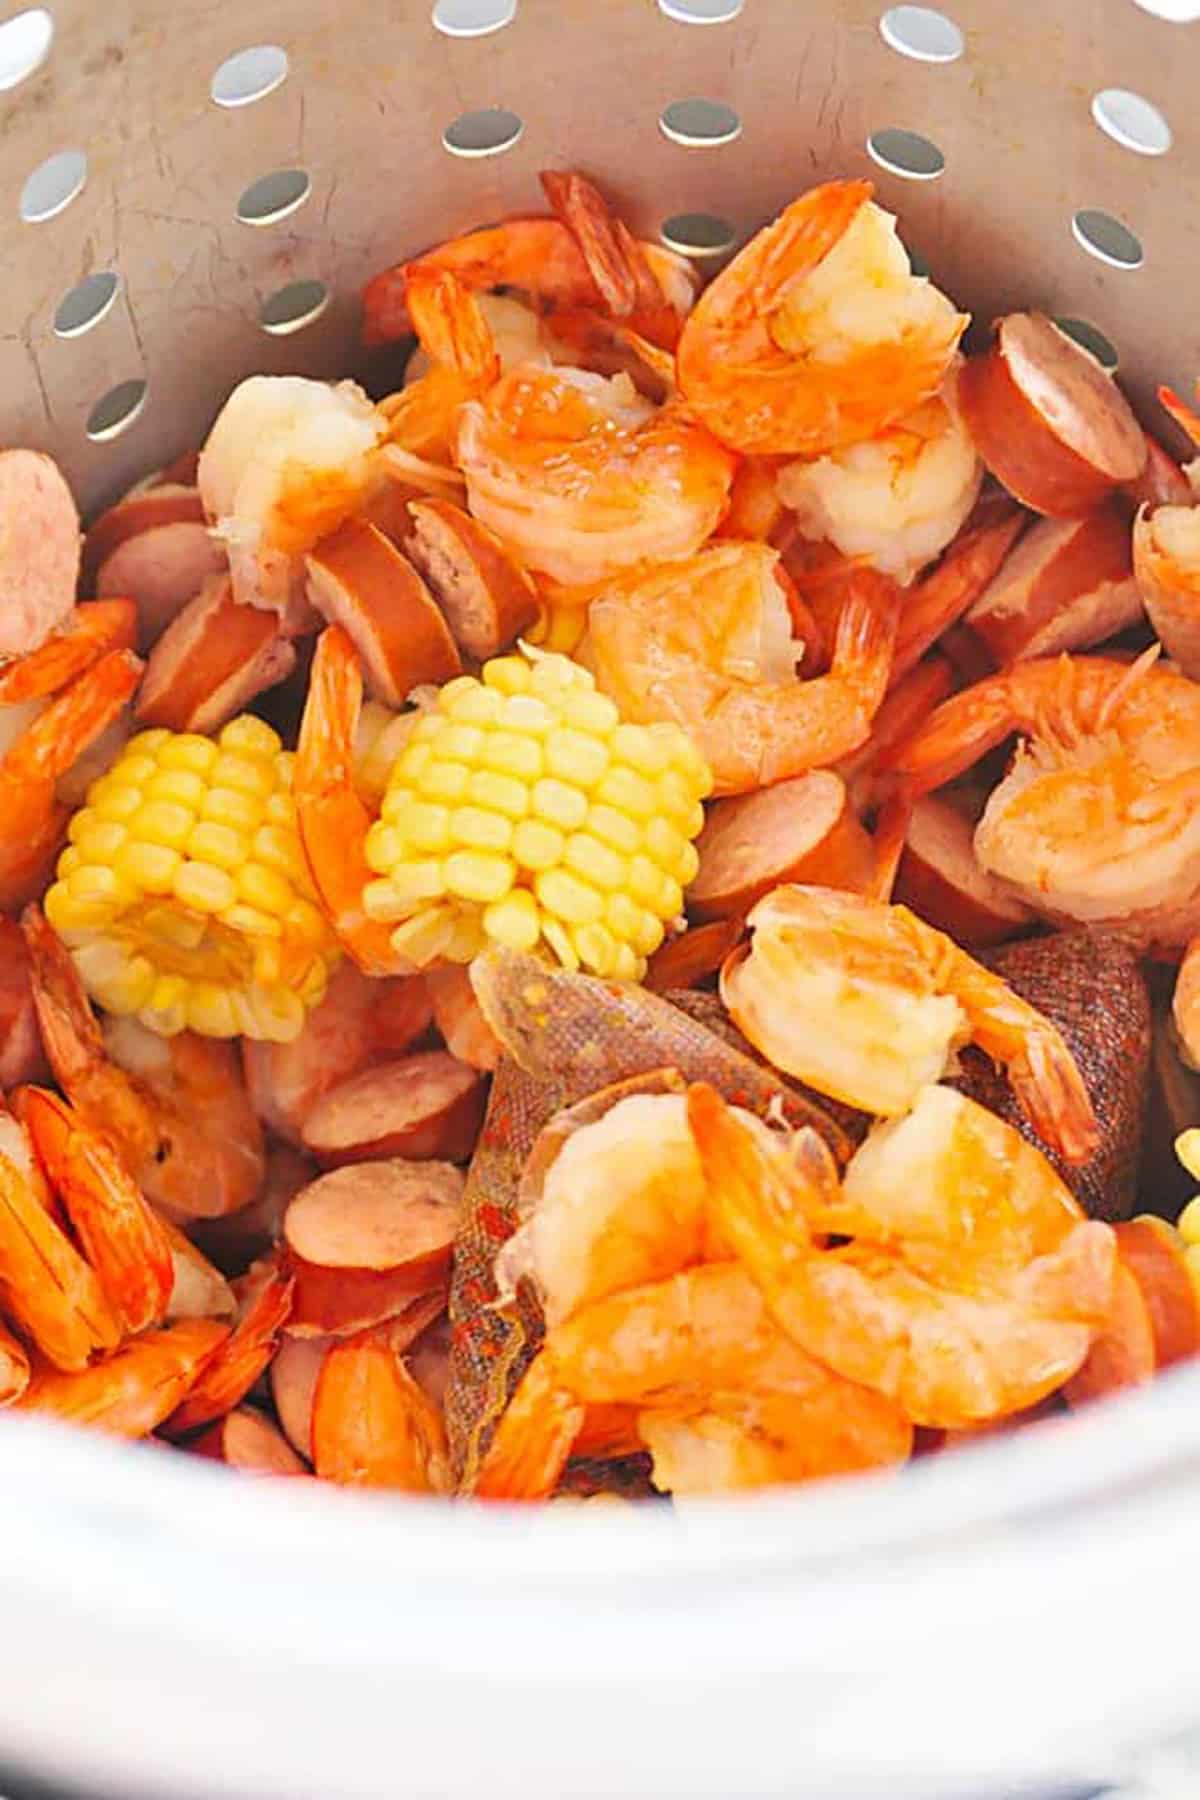 Photo of shrimp boil in large pot.